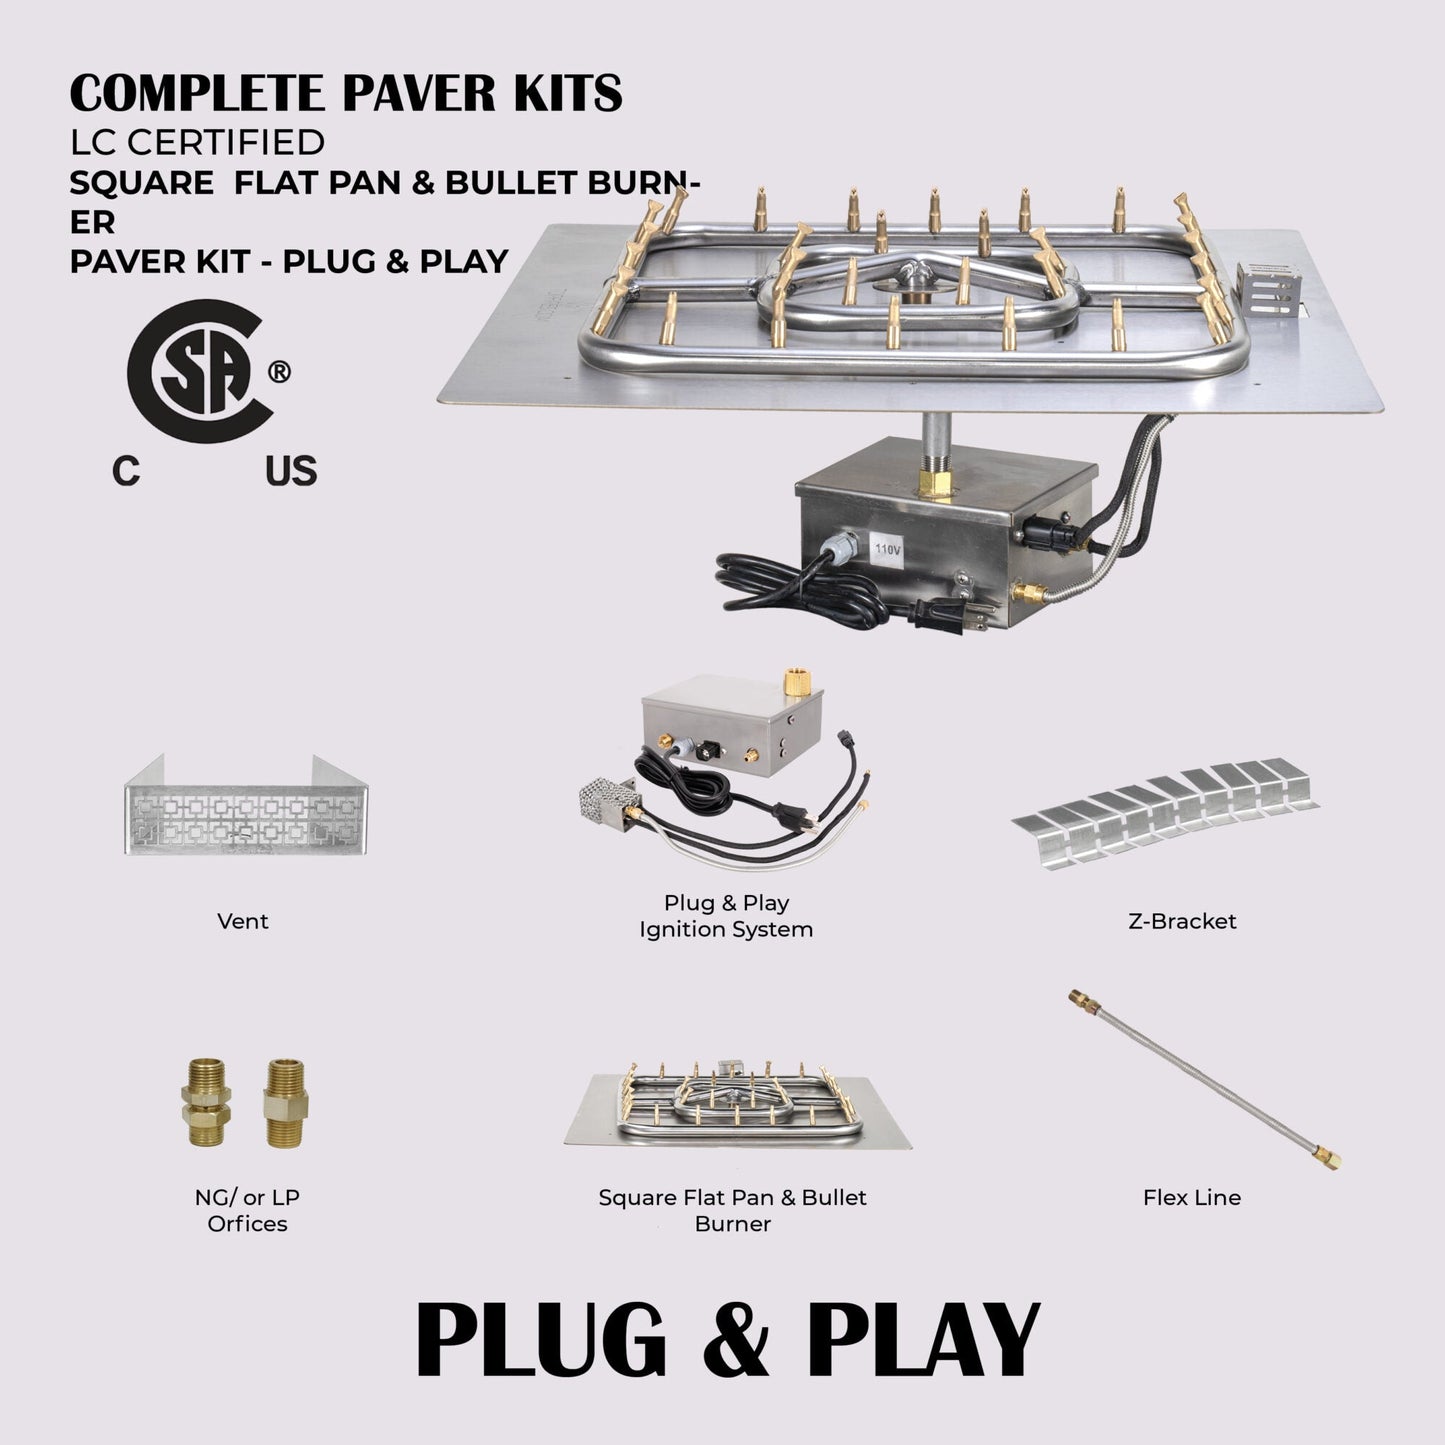 Square Flat Pan & Square Bullet Burner Paver Kit - 110V Plug & Play Electronic Ignition